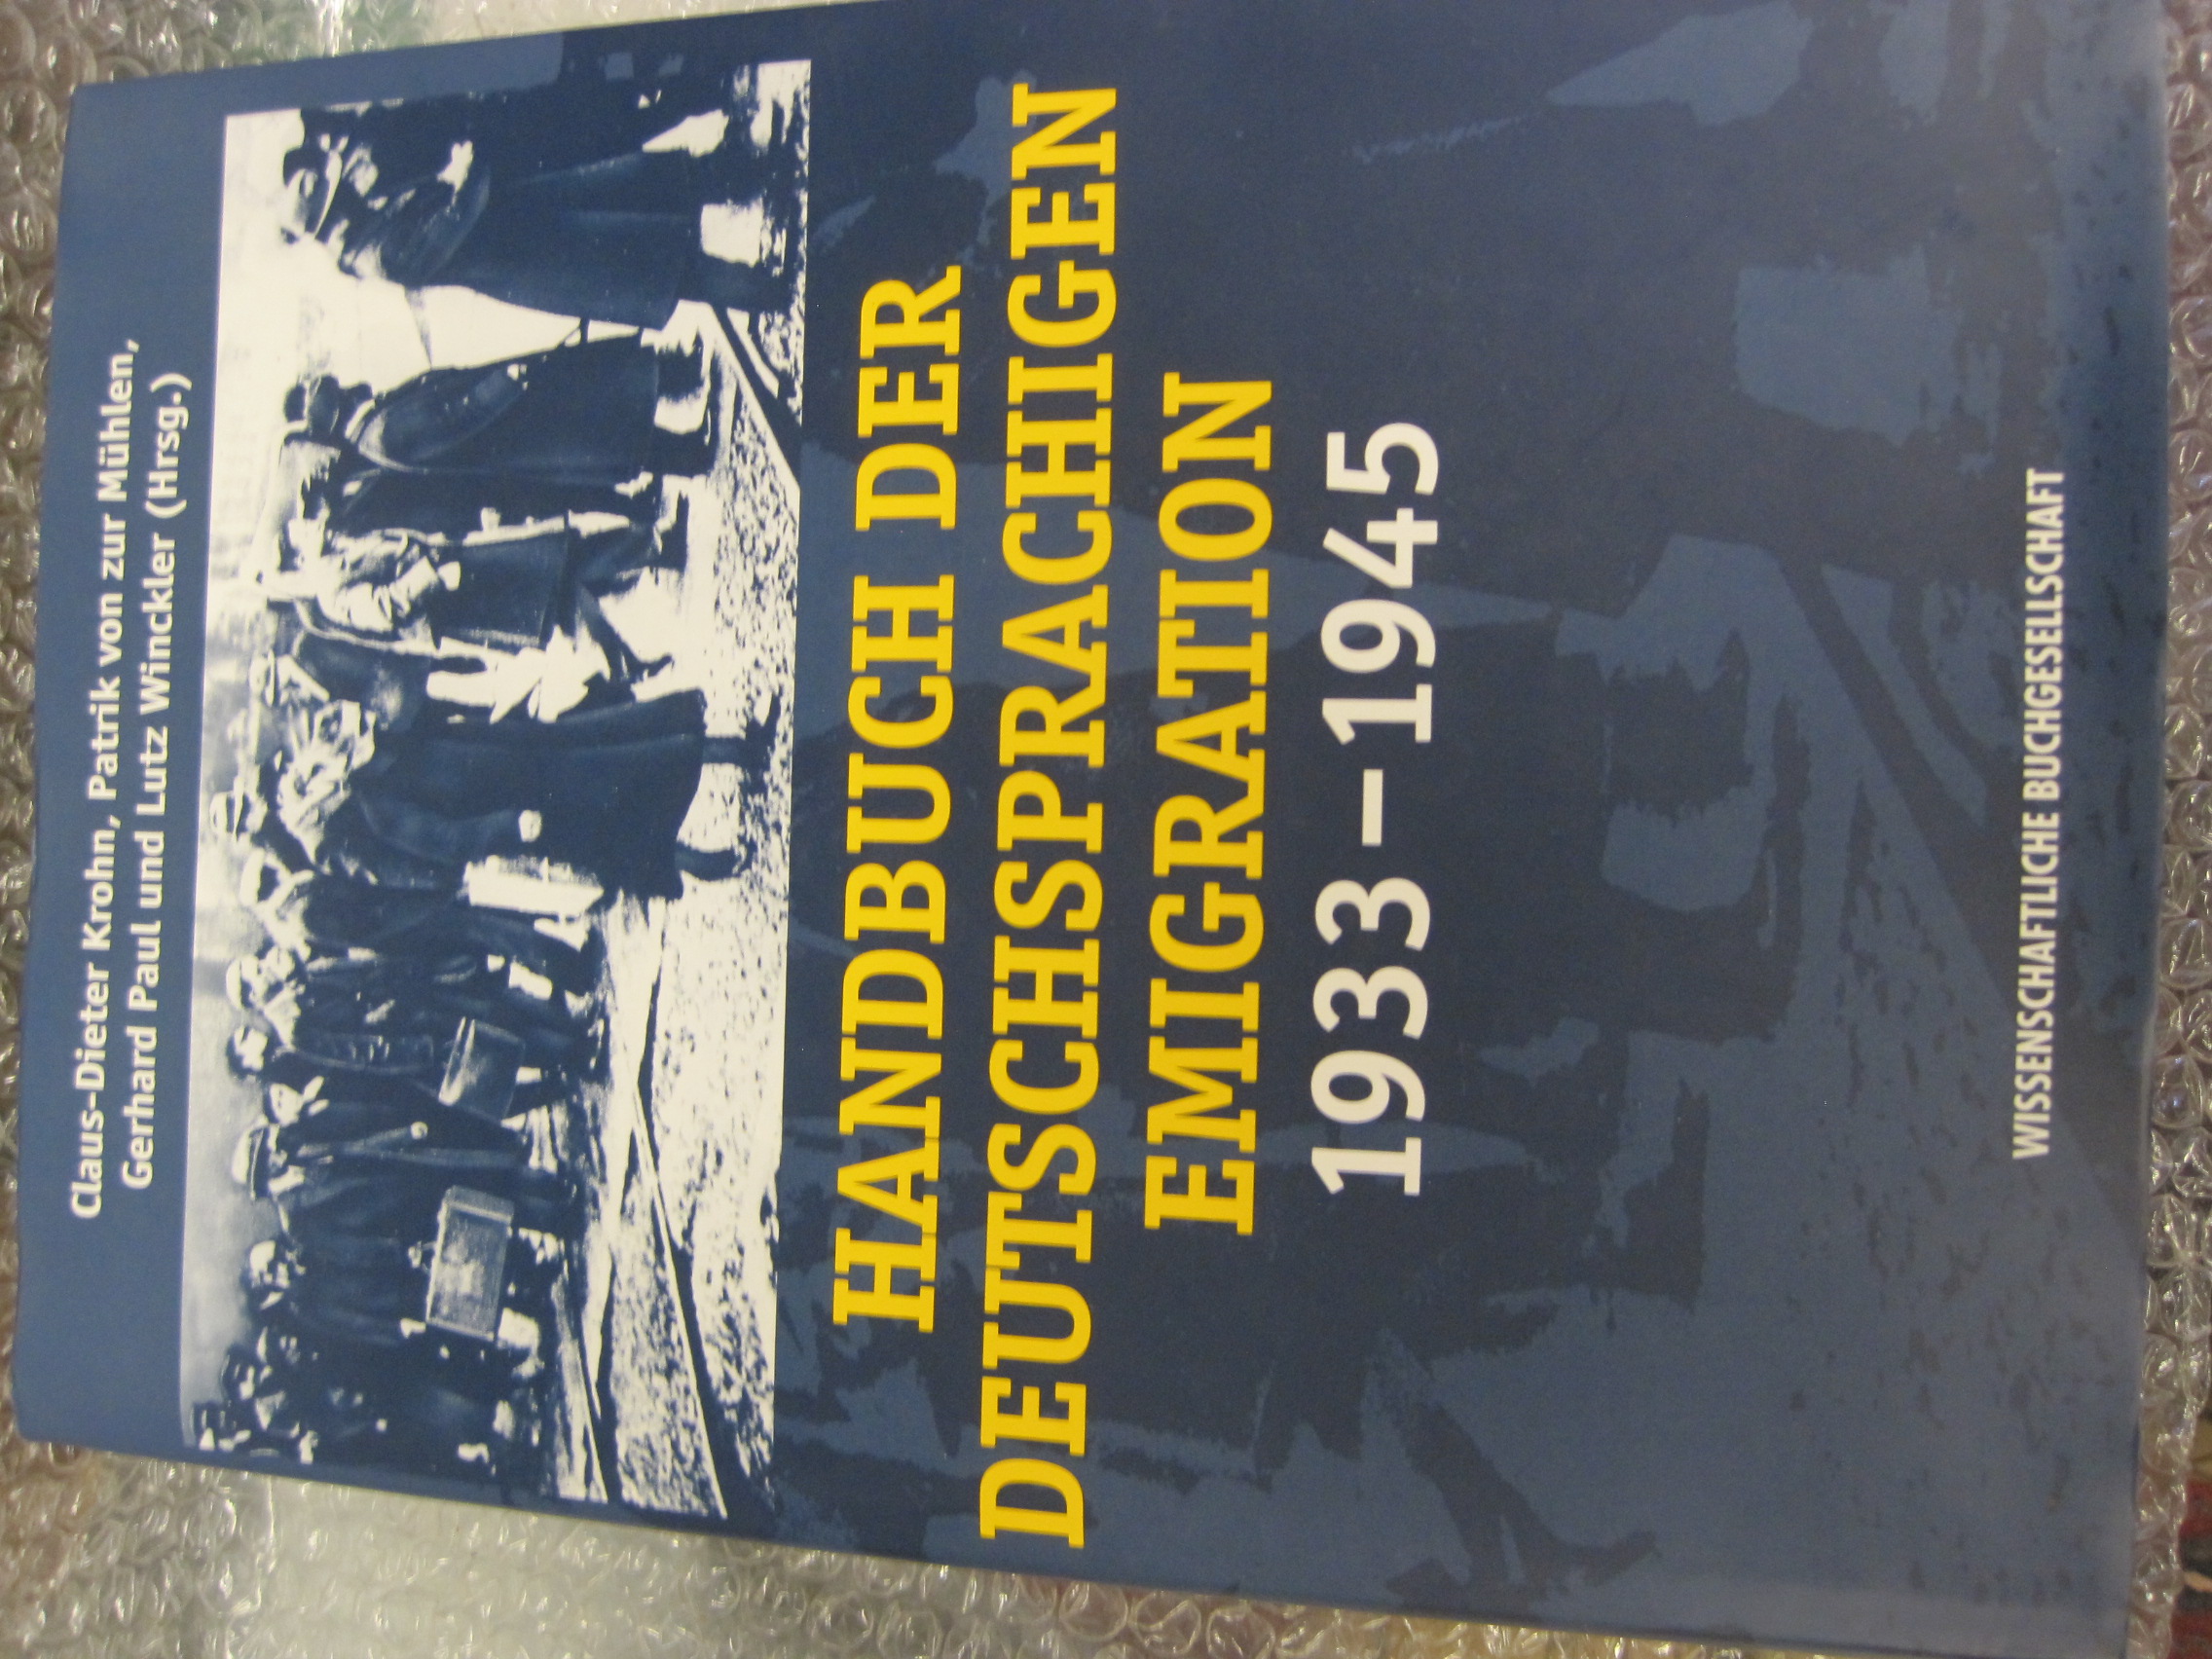 Handbuch der deutschsprachigen Emigration 1933-1945 - Claus-Dieter Krohn et.al